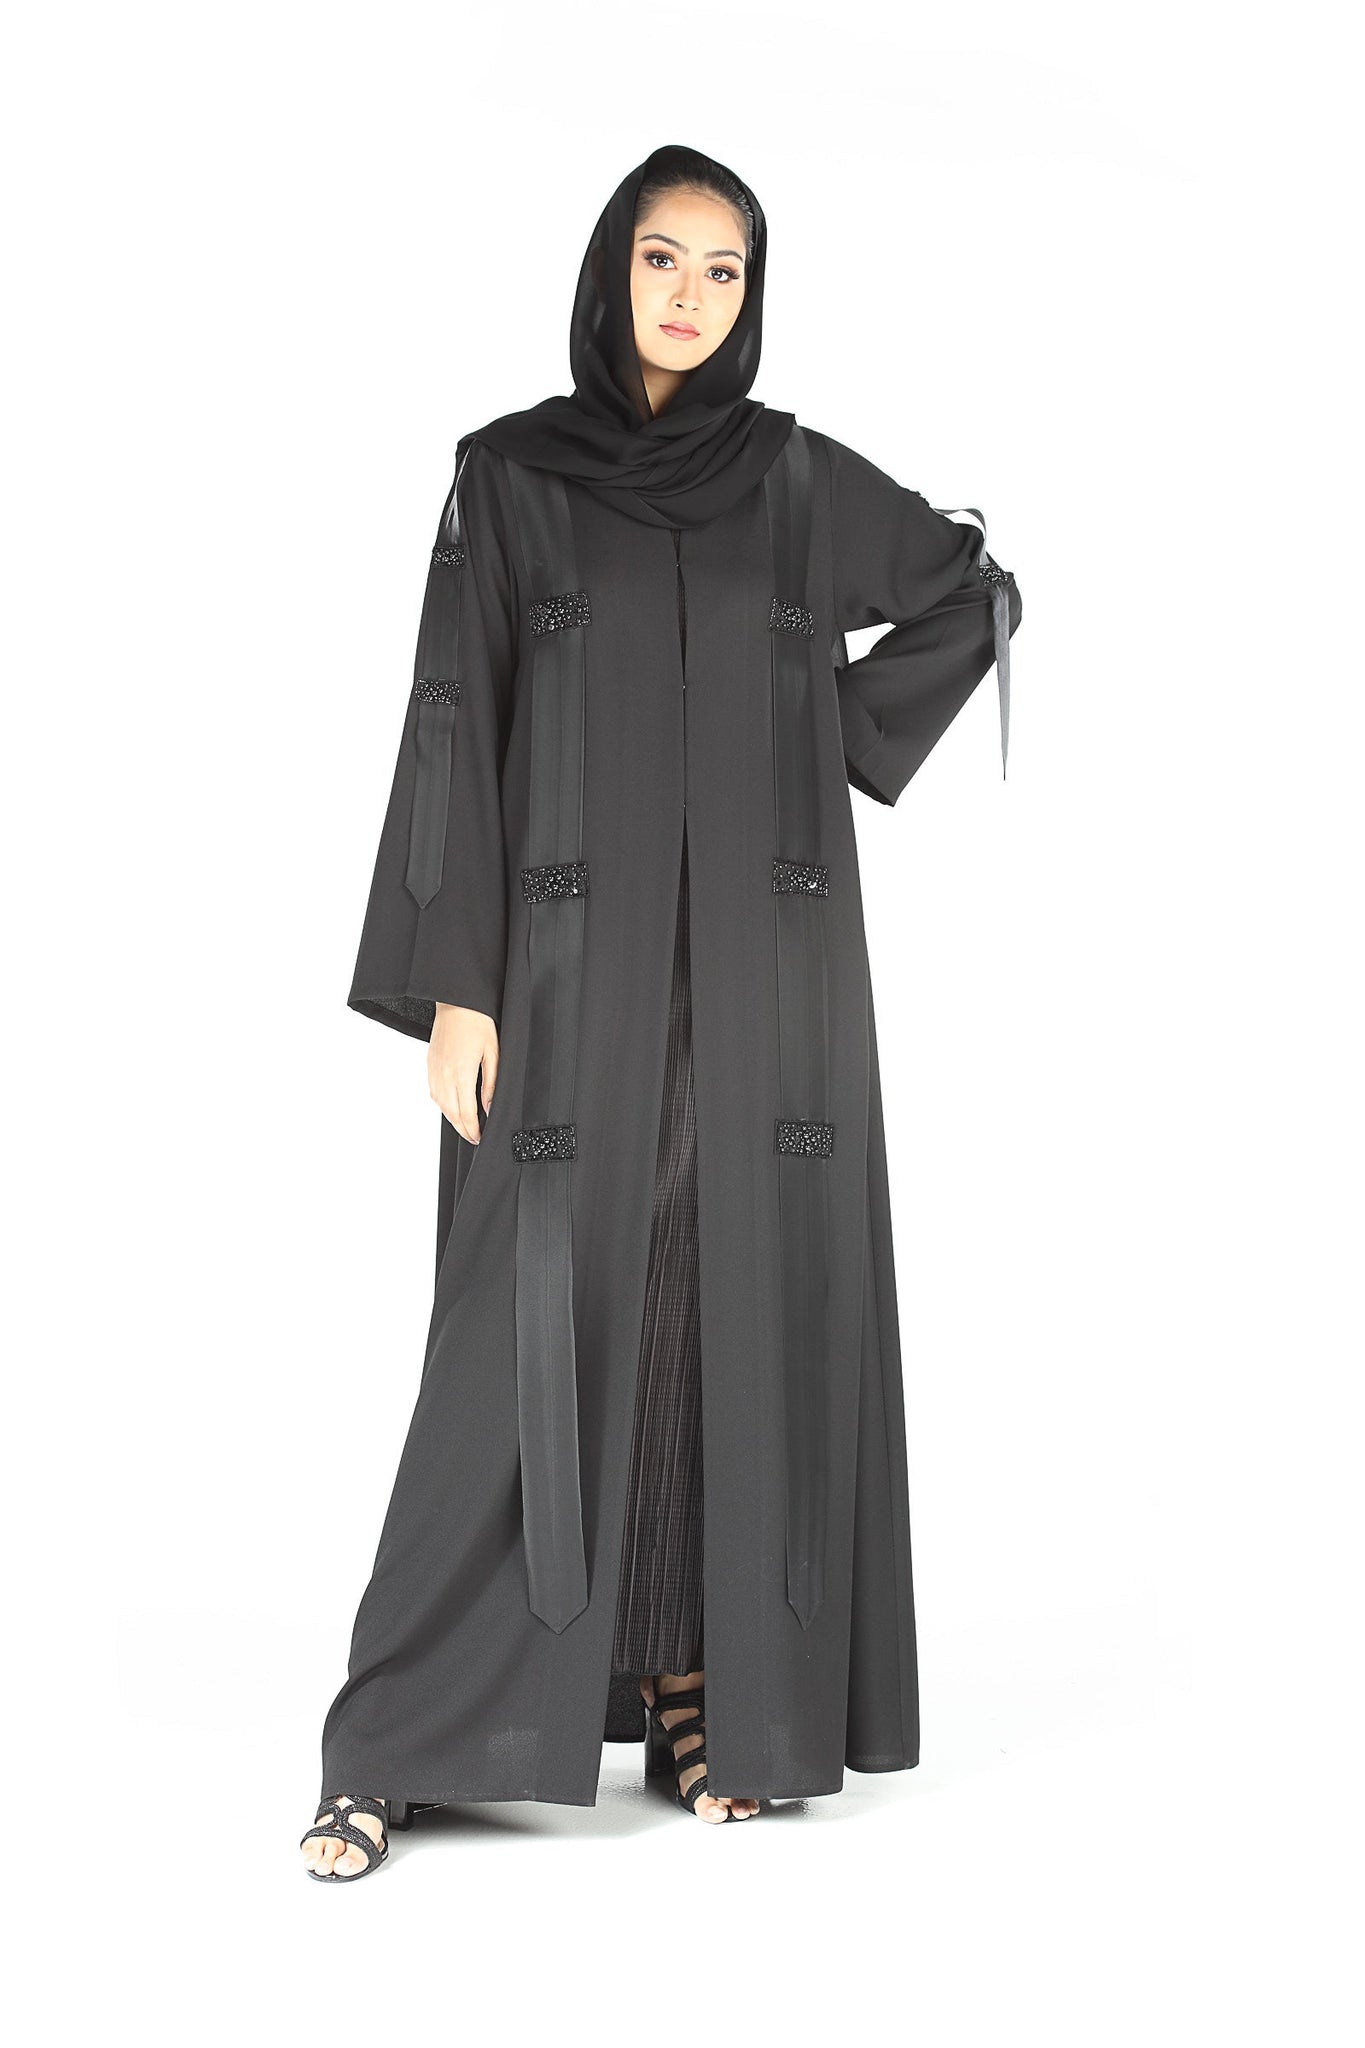 Hanayen Abaya in Black Beads Details